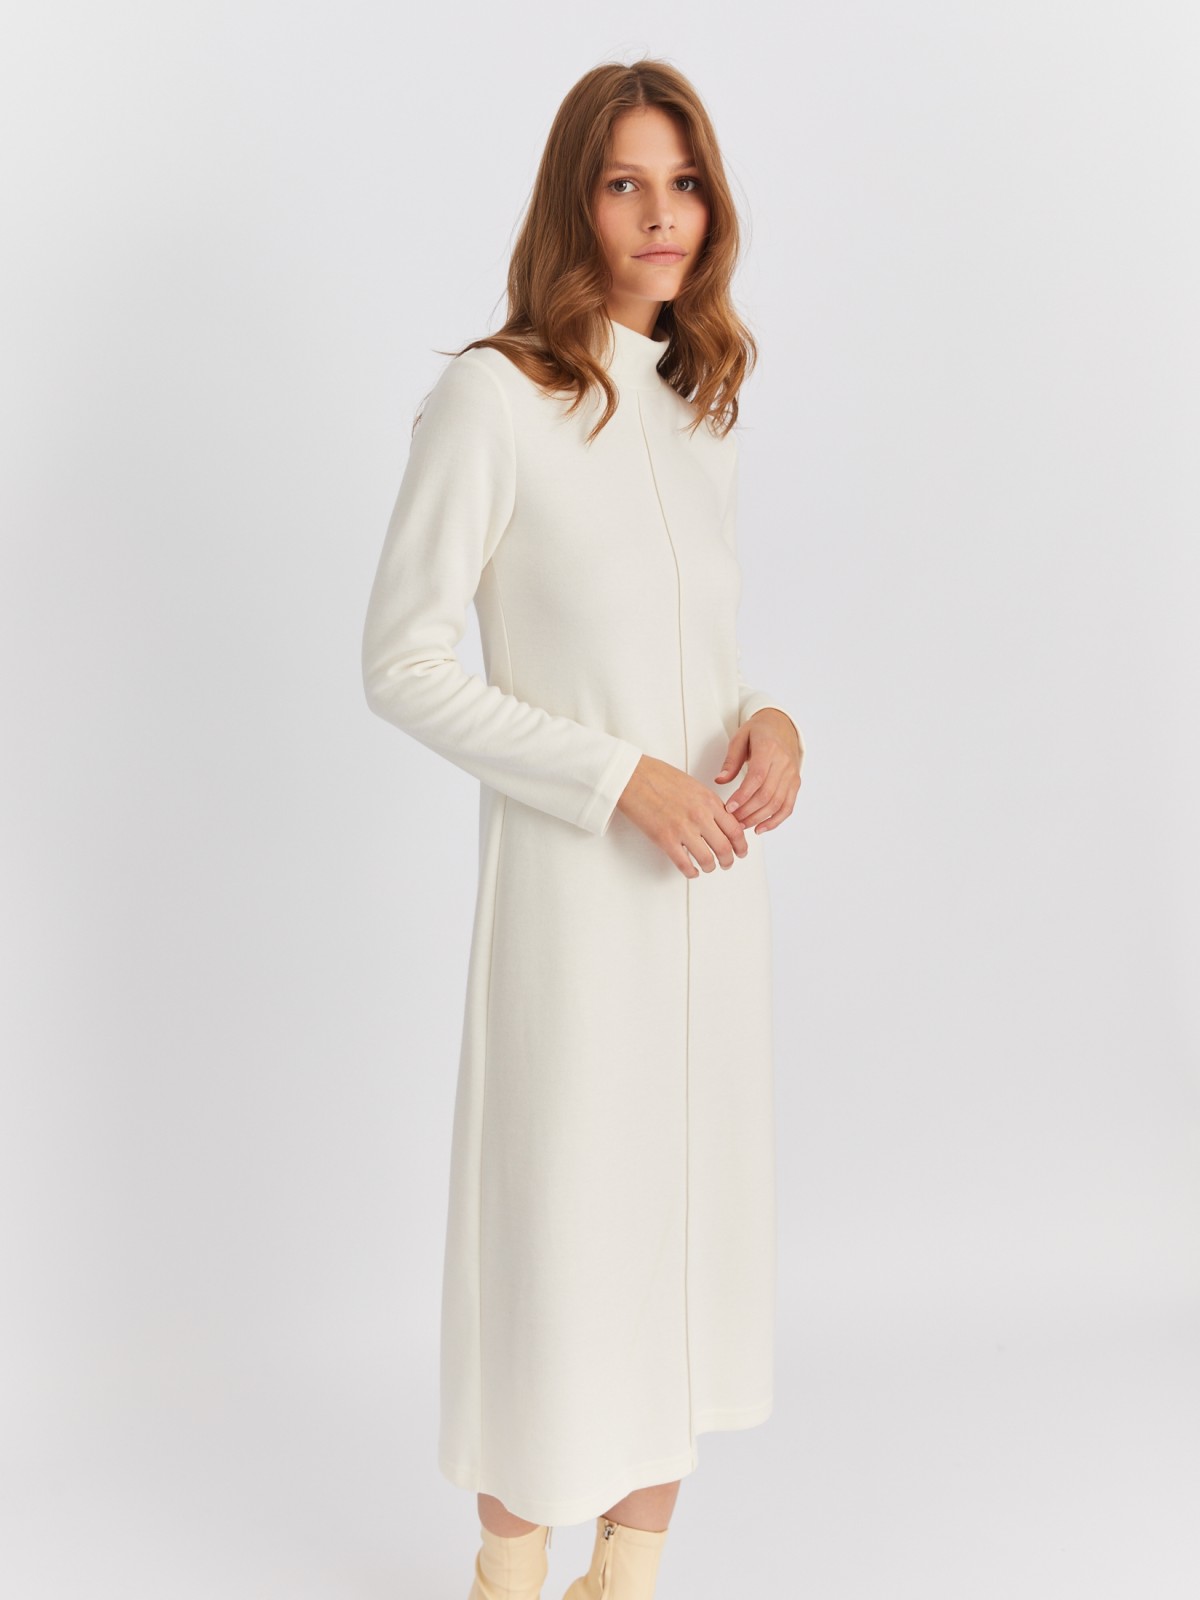 Платье-свитер из вязаного трикотажа с высоким горлом zolla 22342819F051, цвет молоко, размер L